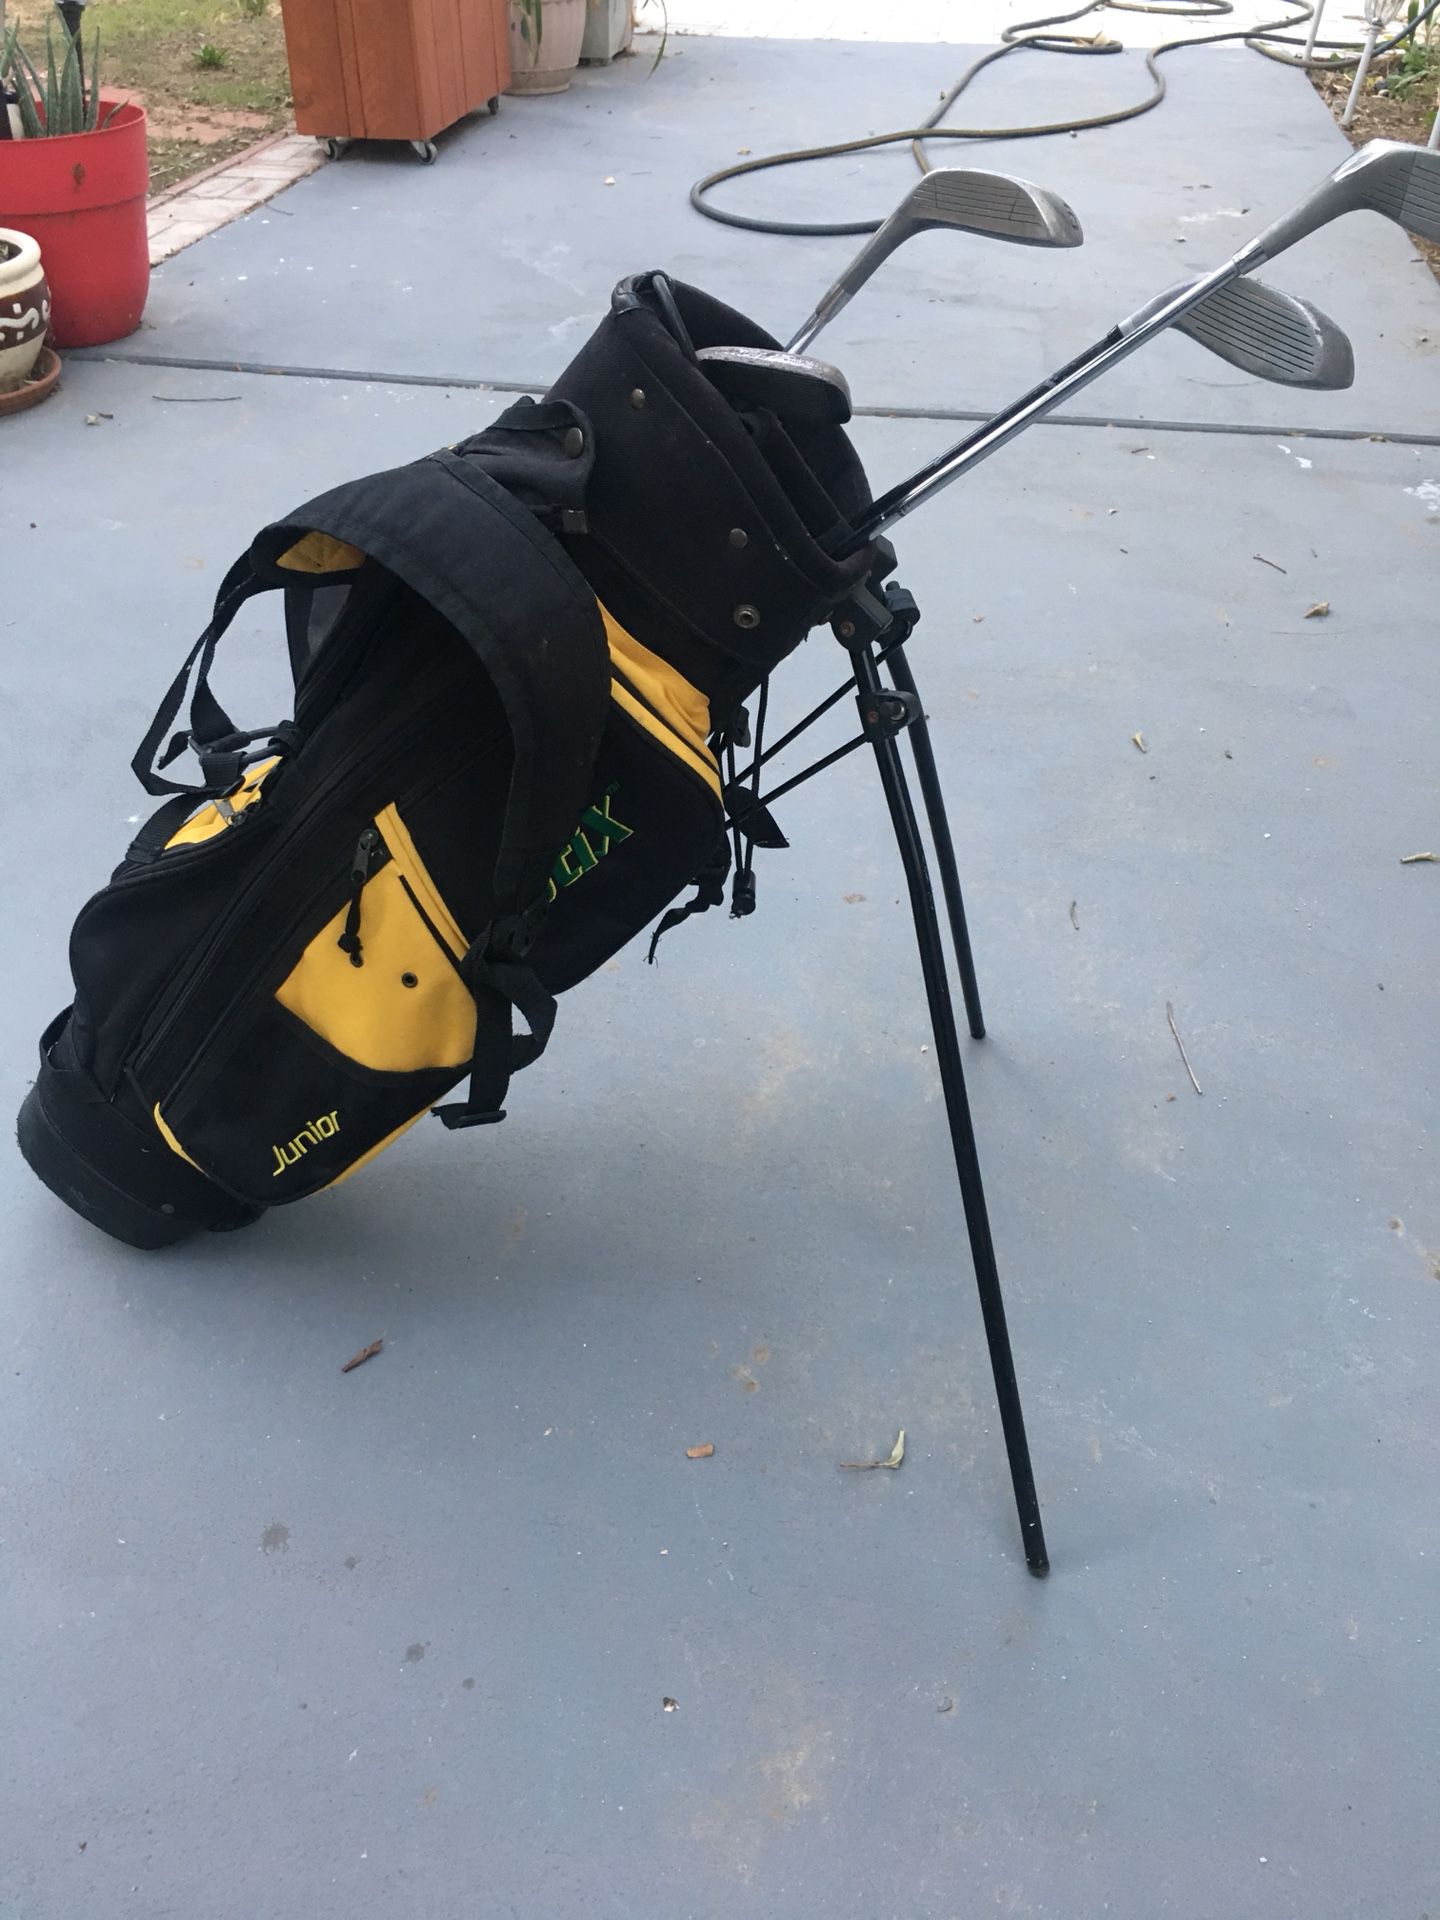 Stix golf clubs and bag for junior